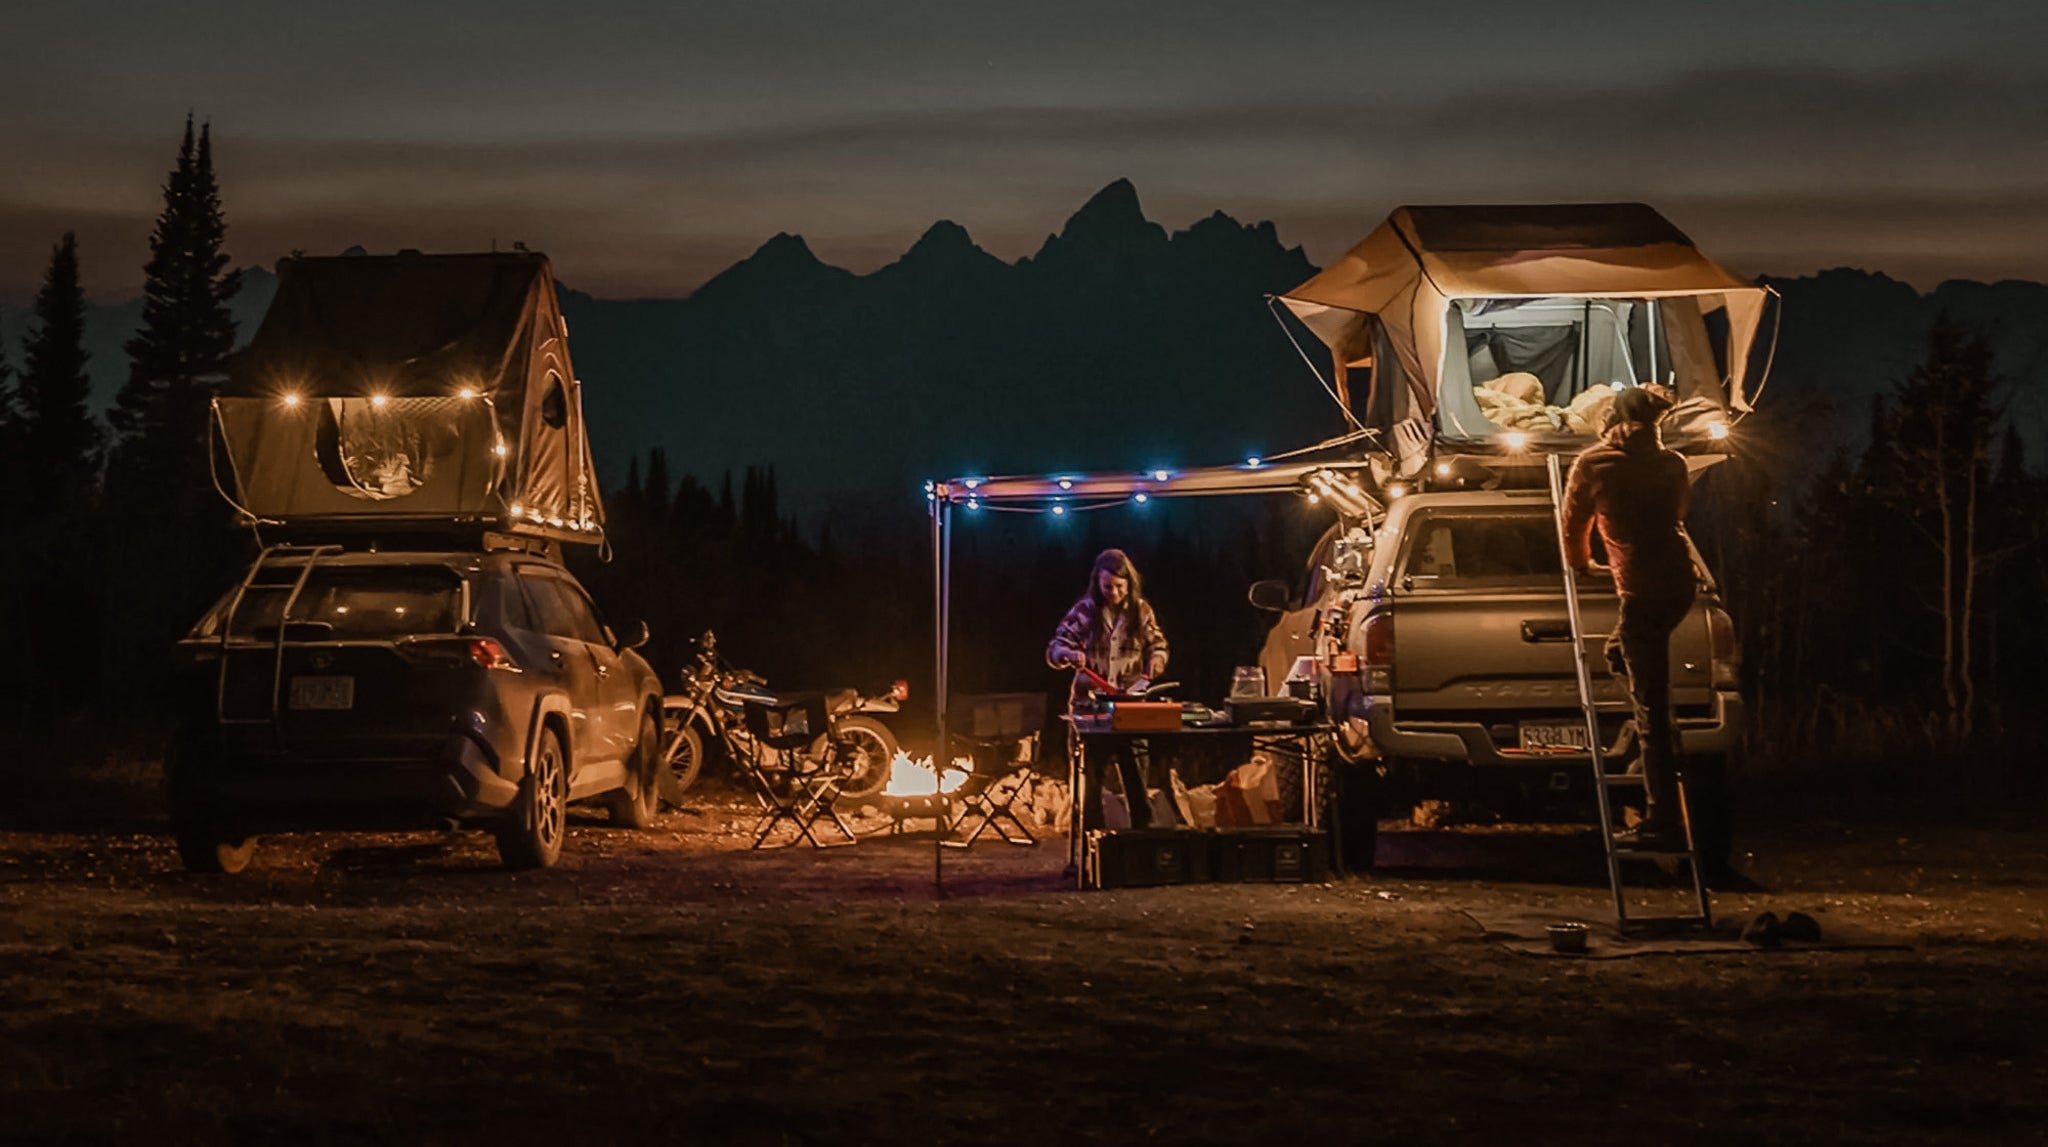 Outdoor Camping Lights, Solar String Lights